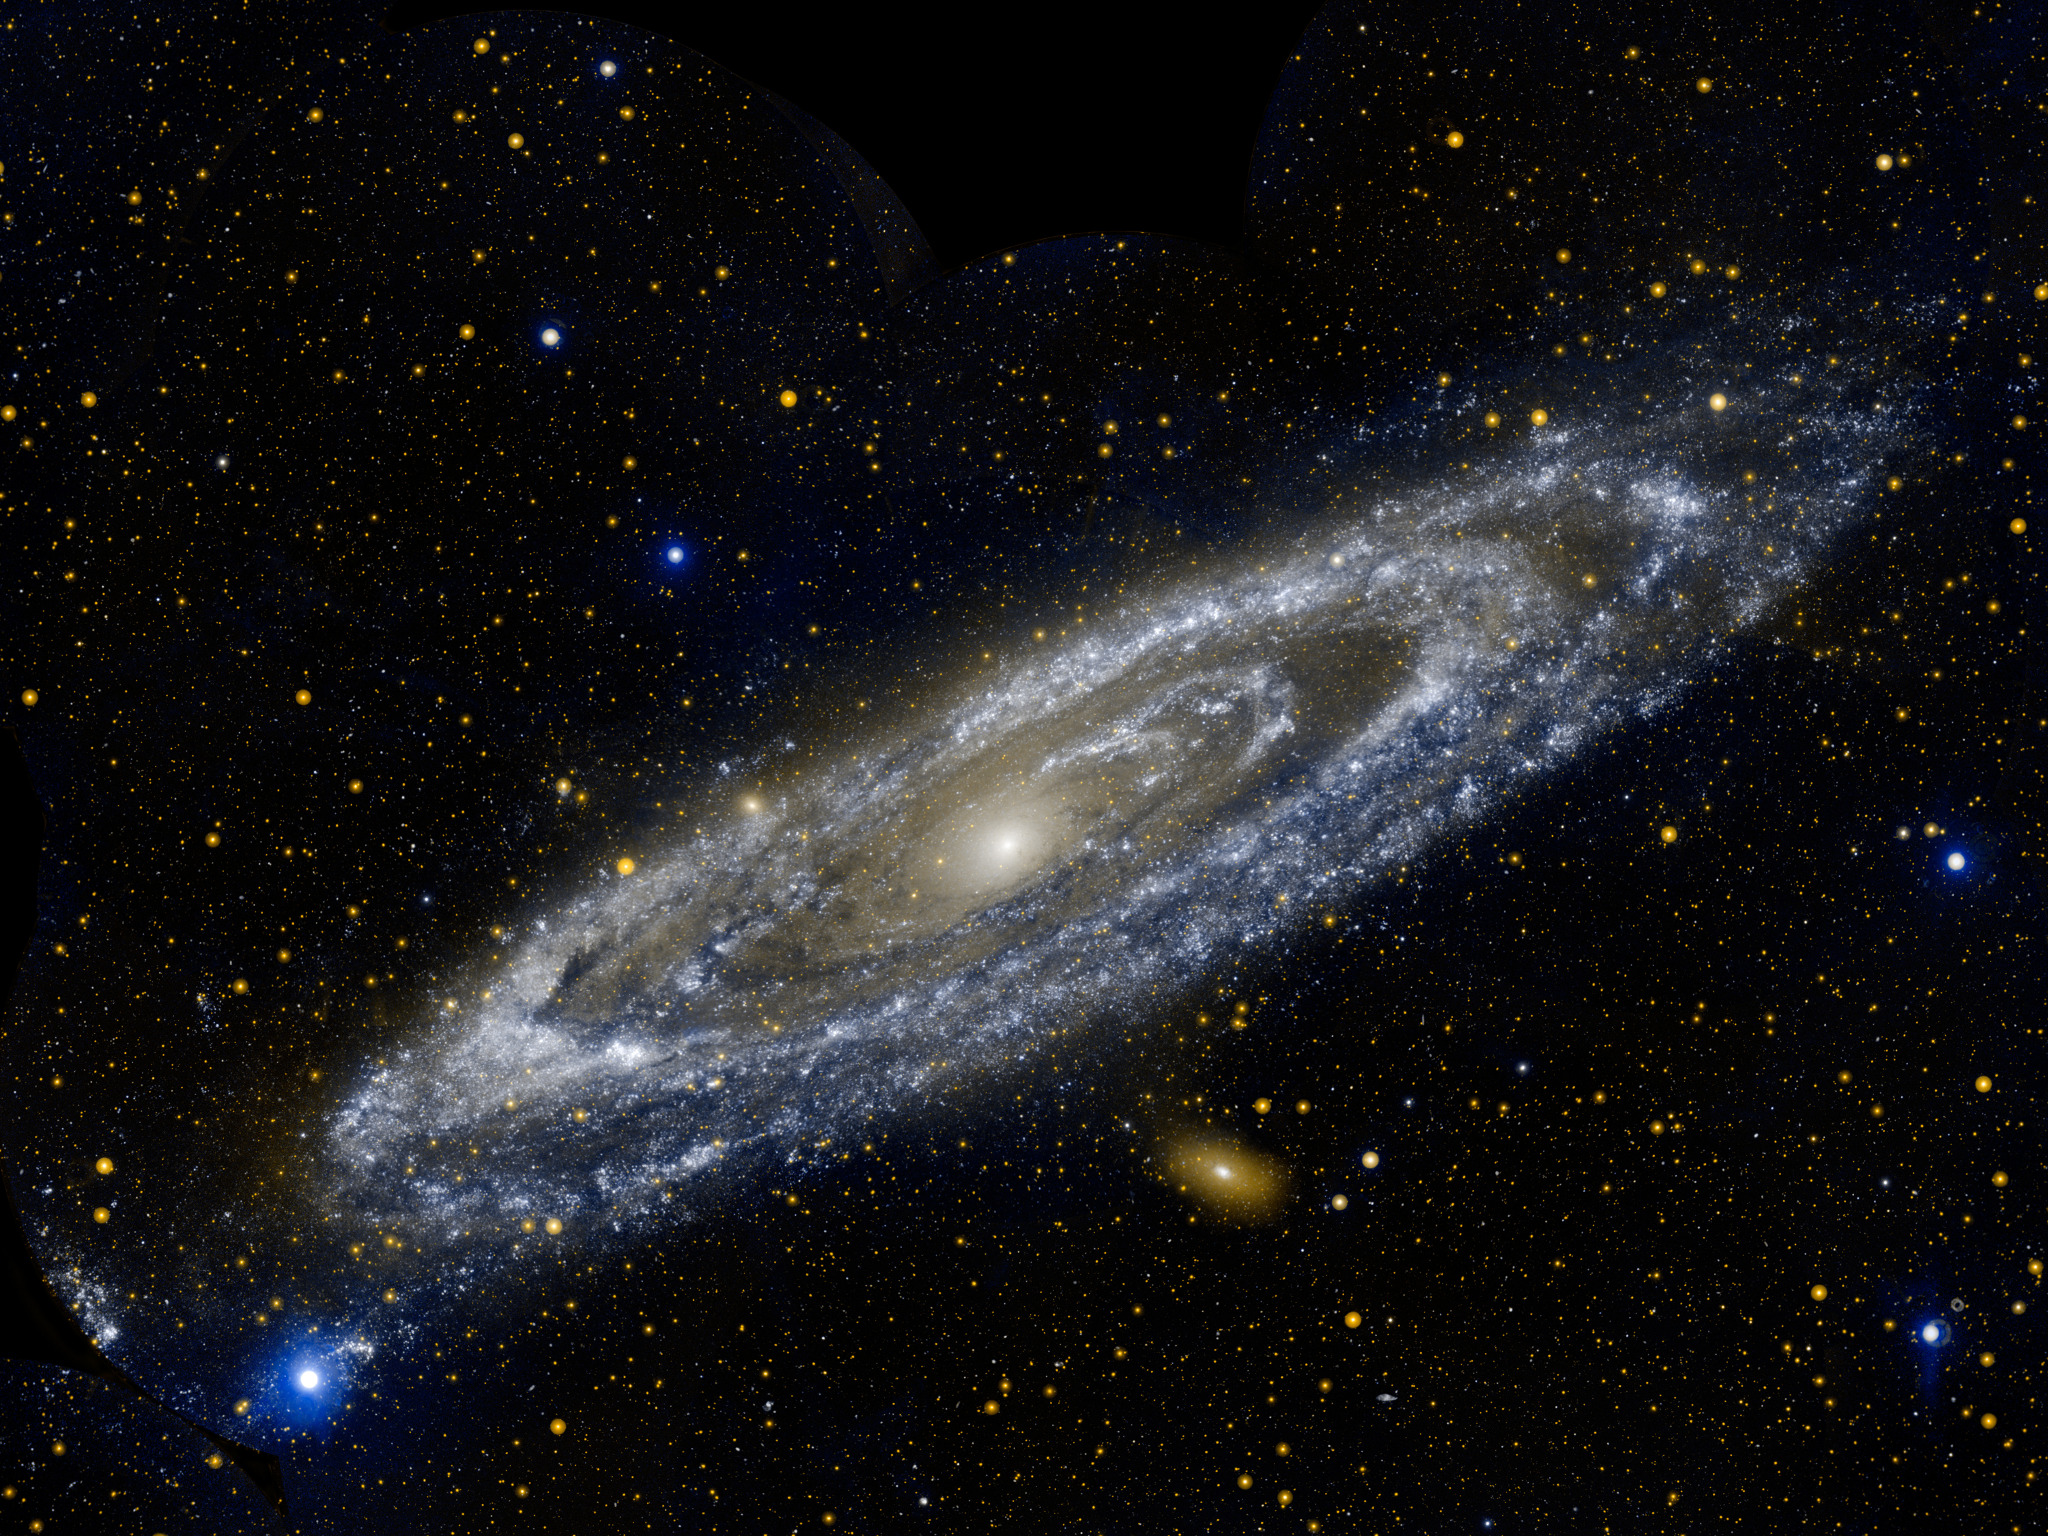 Une vue inhabituelle de la galaxie d'Andromède. M31 est ici prise en photo par Galaxy Evolution Explorer, un observatoire astronomique spatial destiné à l'observation de galaxies dans l'ultraviolet. © Nasa